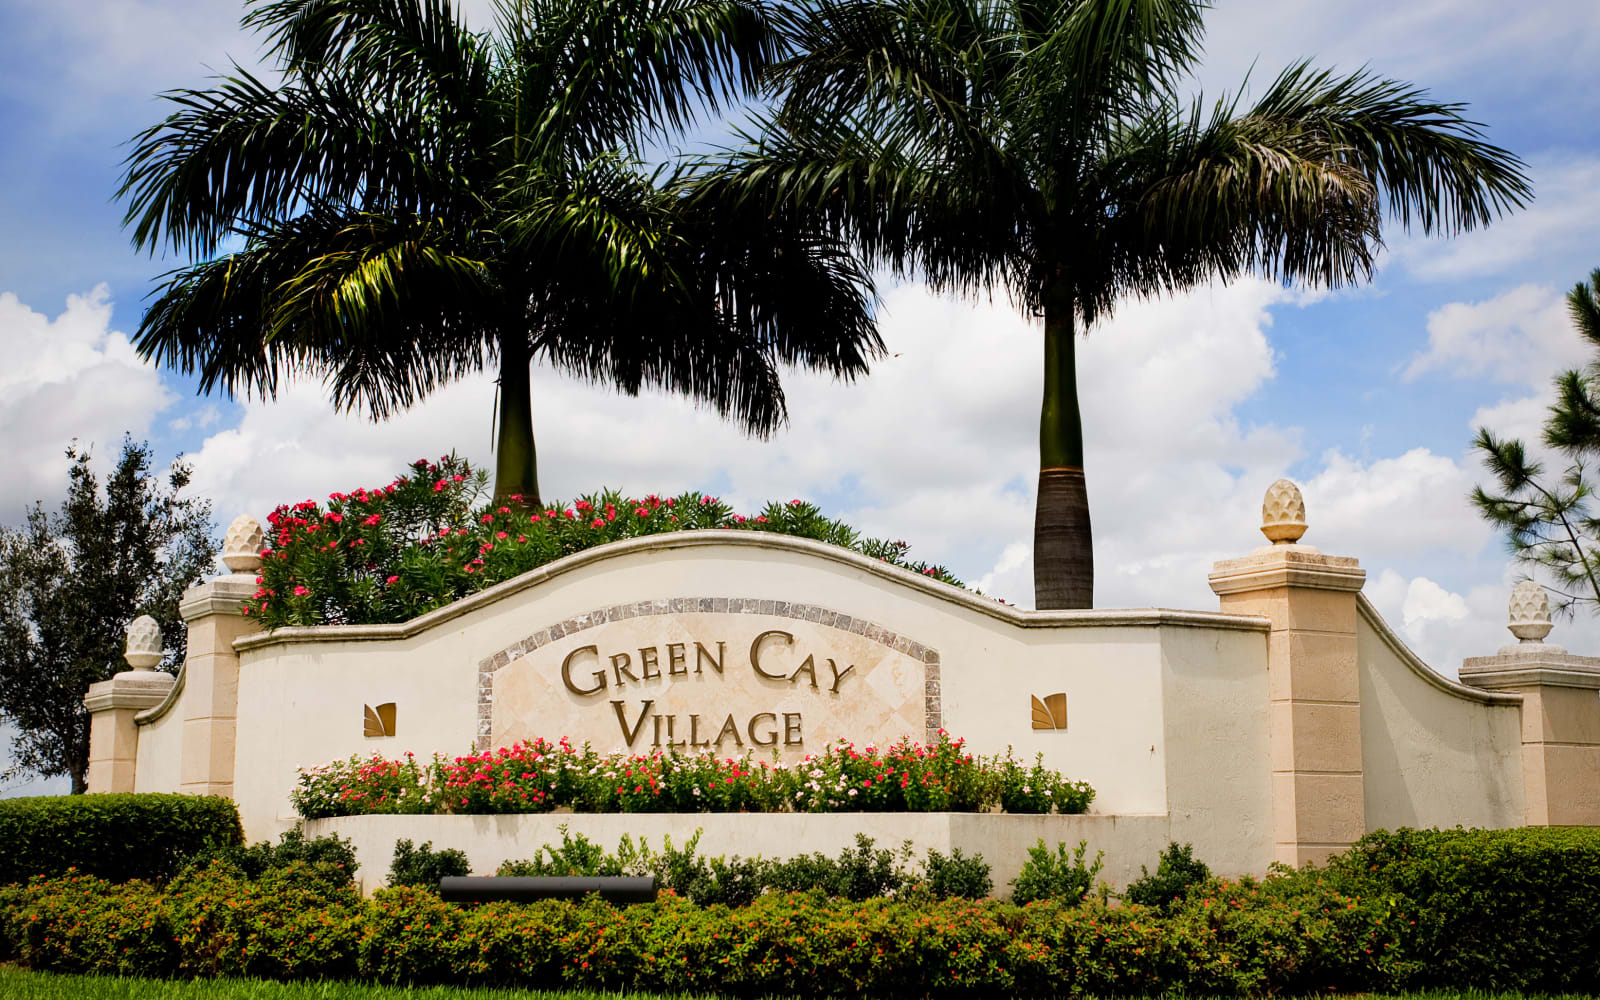 Exterior sign at Green Cay Village in Boynton Beach, Florida